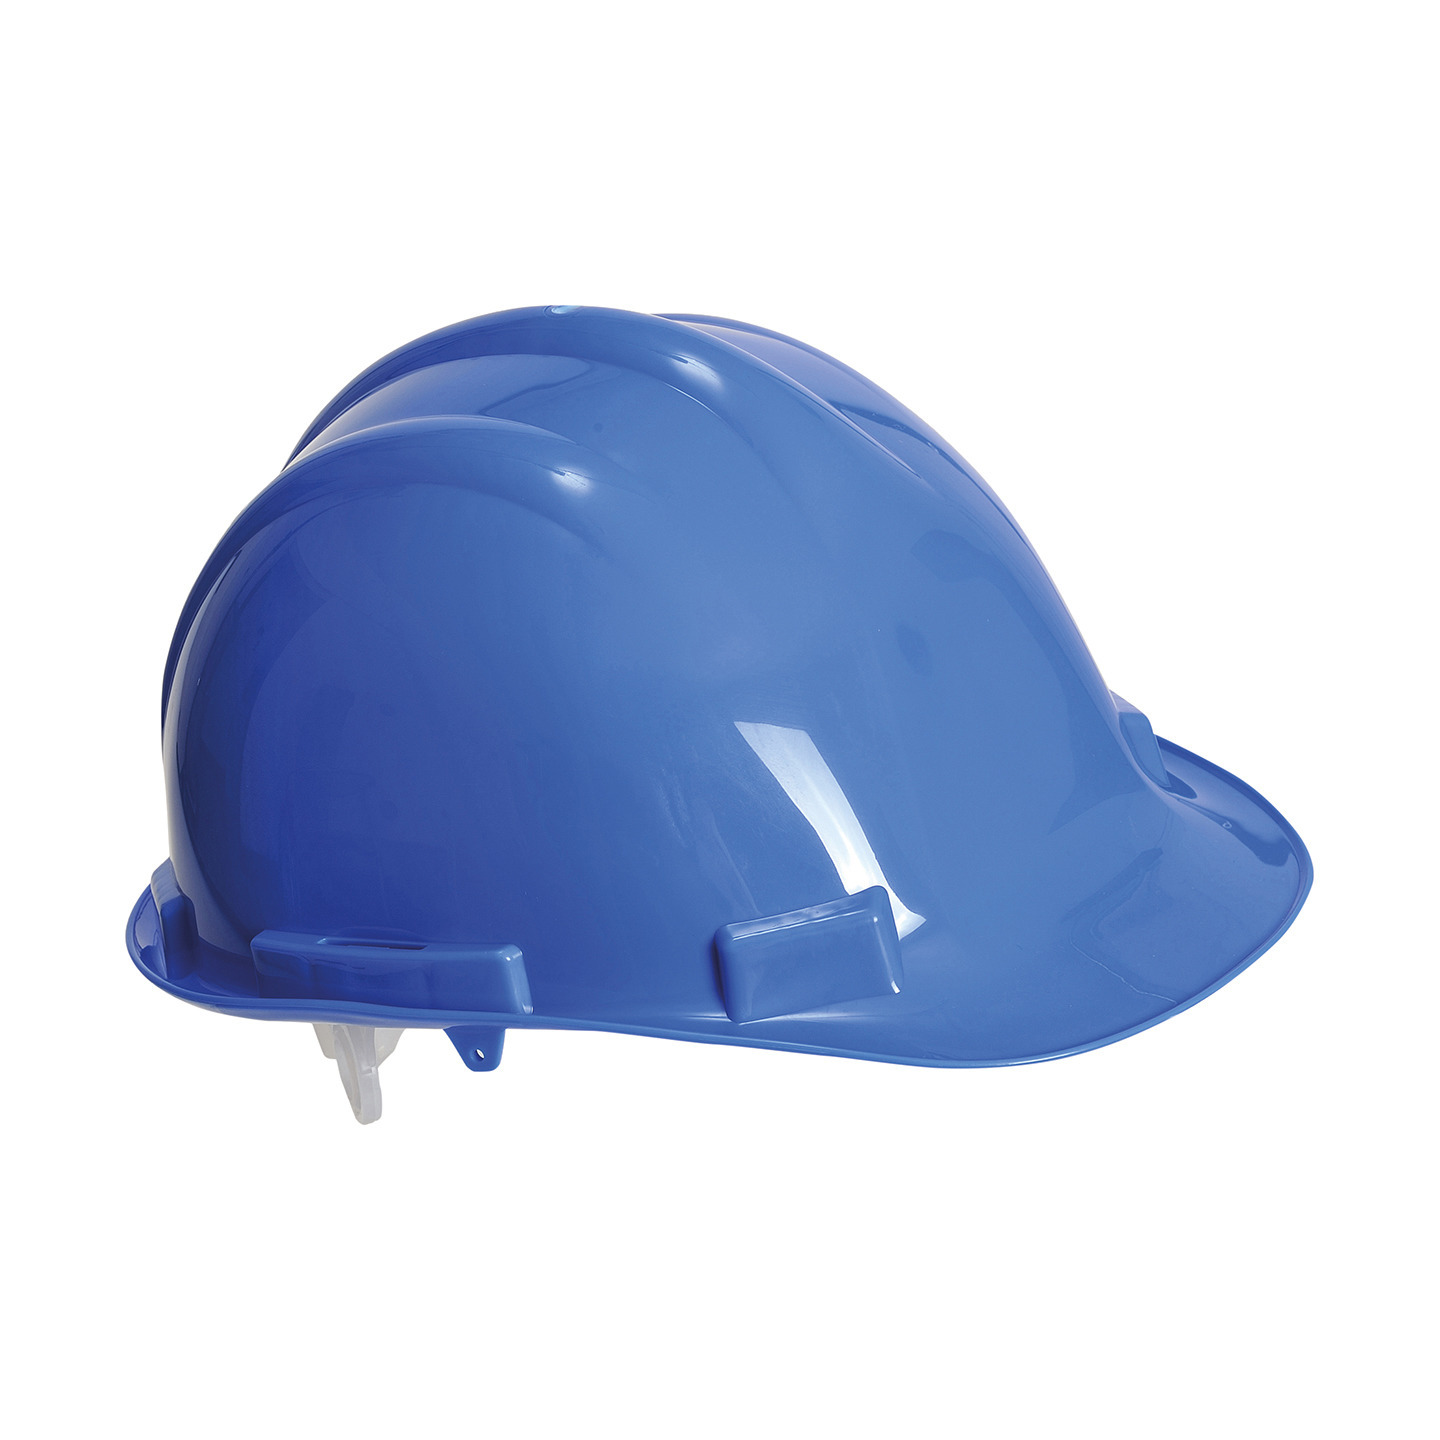 Veiligheidshelm-bouwhelm hoofdbescherming blauw verstelbaar 55-62 cm